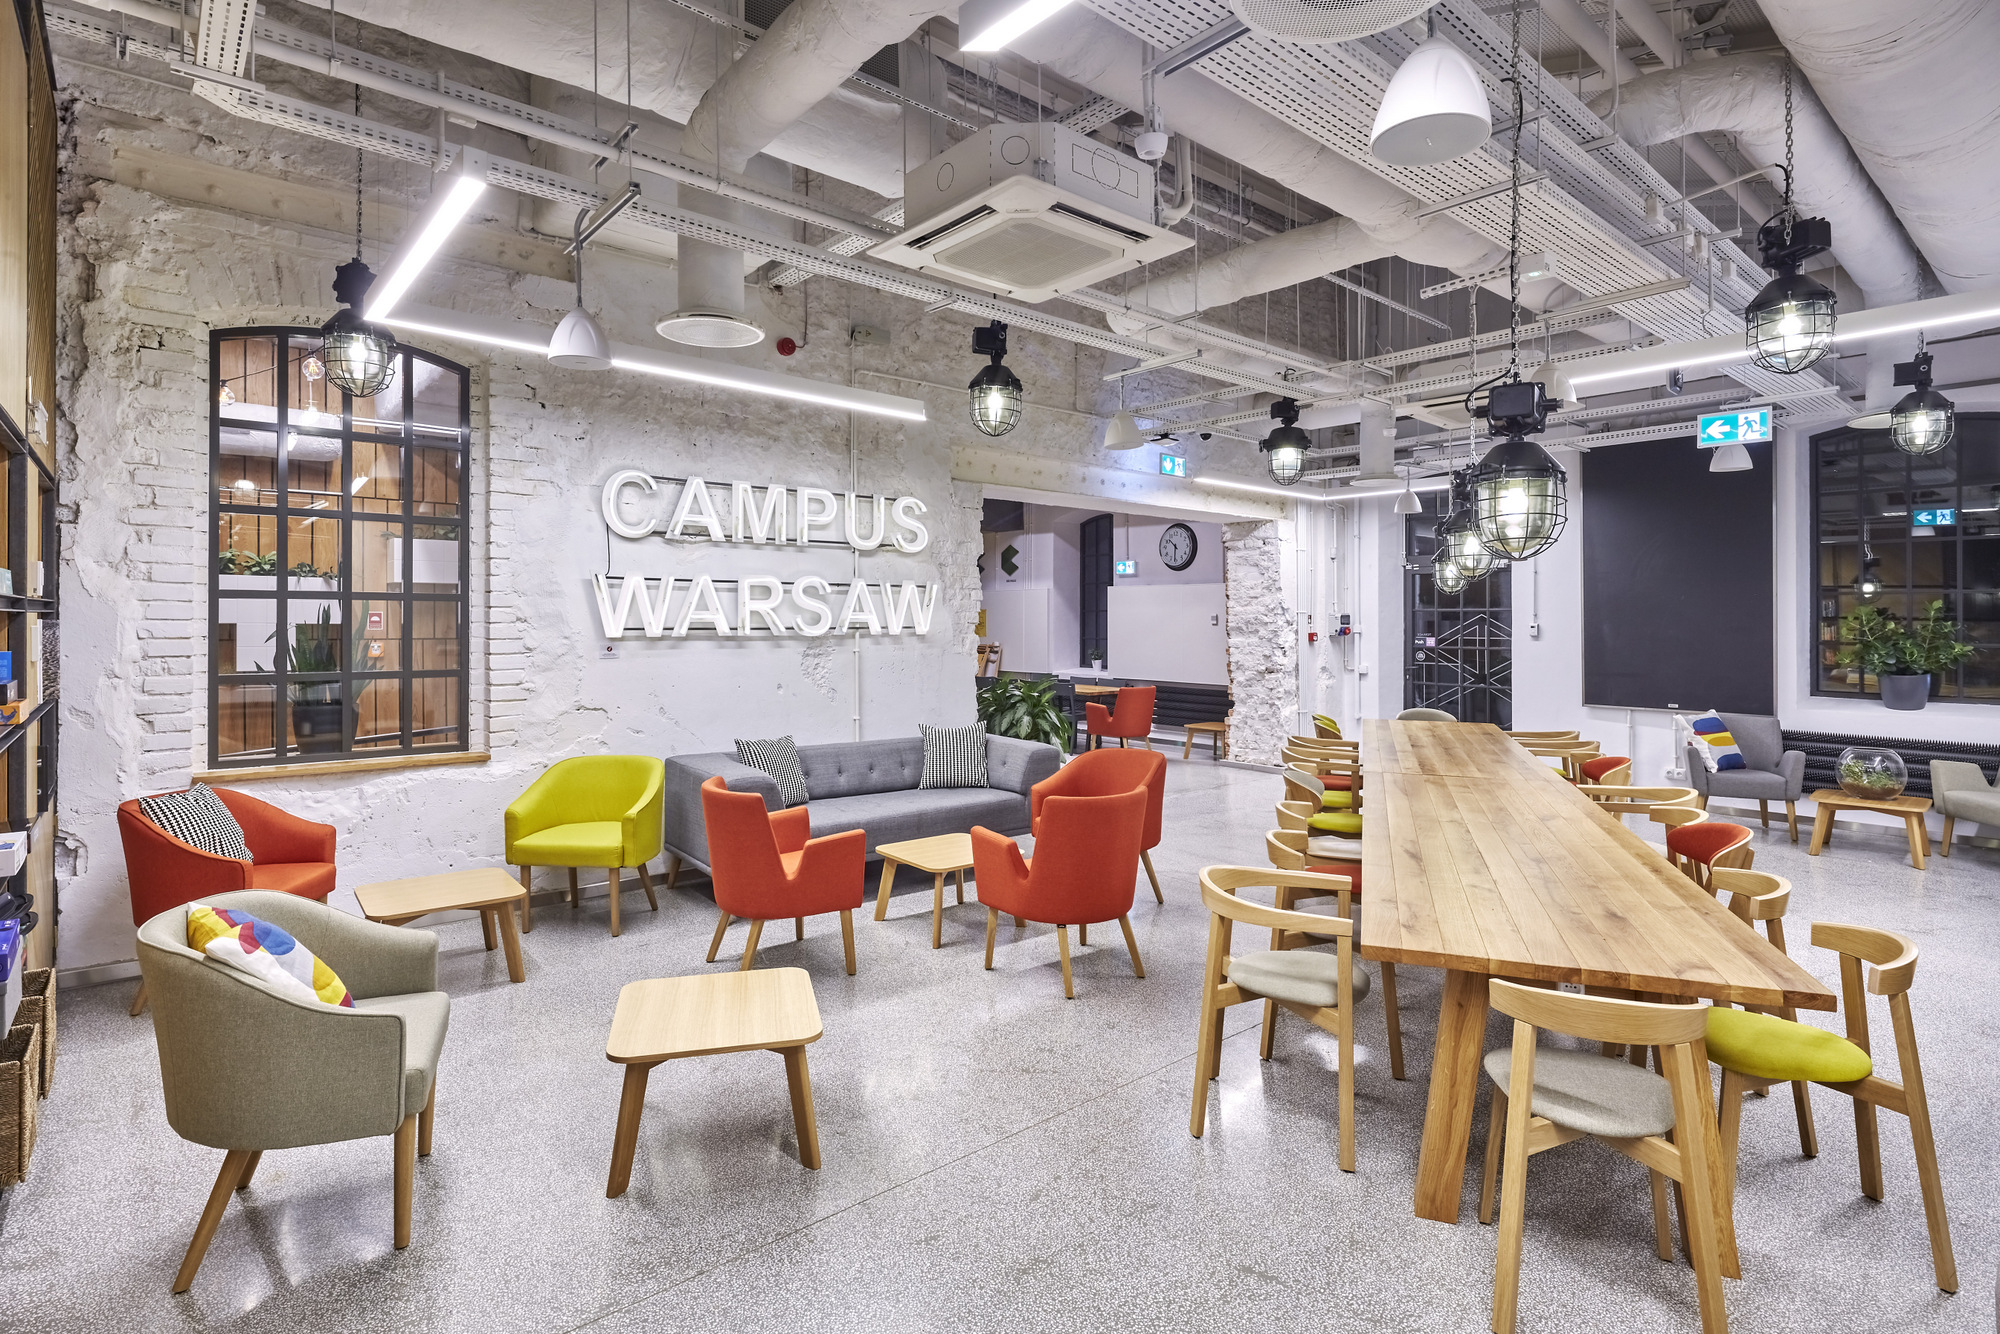 Google Space(グーグルスペース)のCampus ワルシャワのコワーキングオフィス - ワルシャワ,ポーランドのオープンスペース